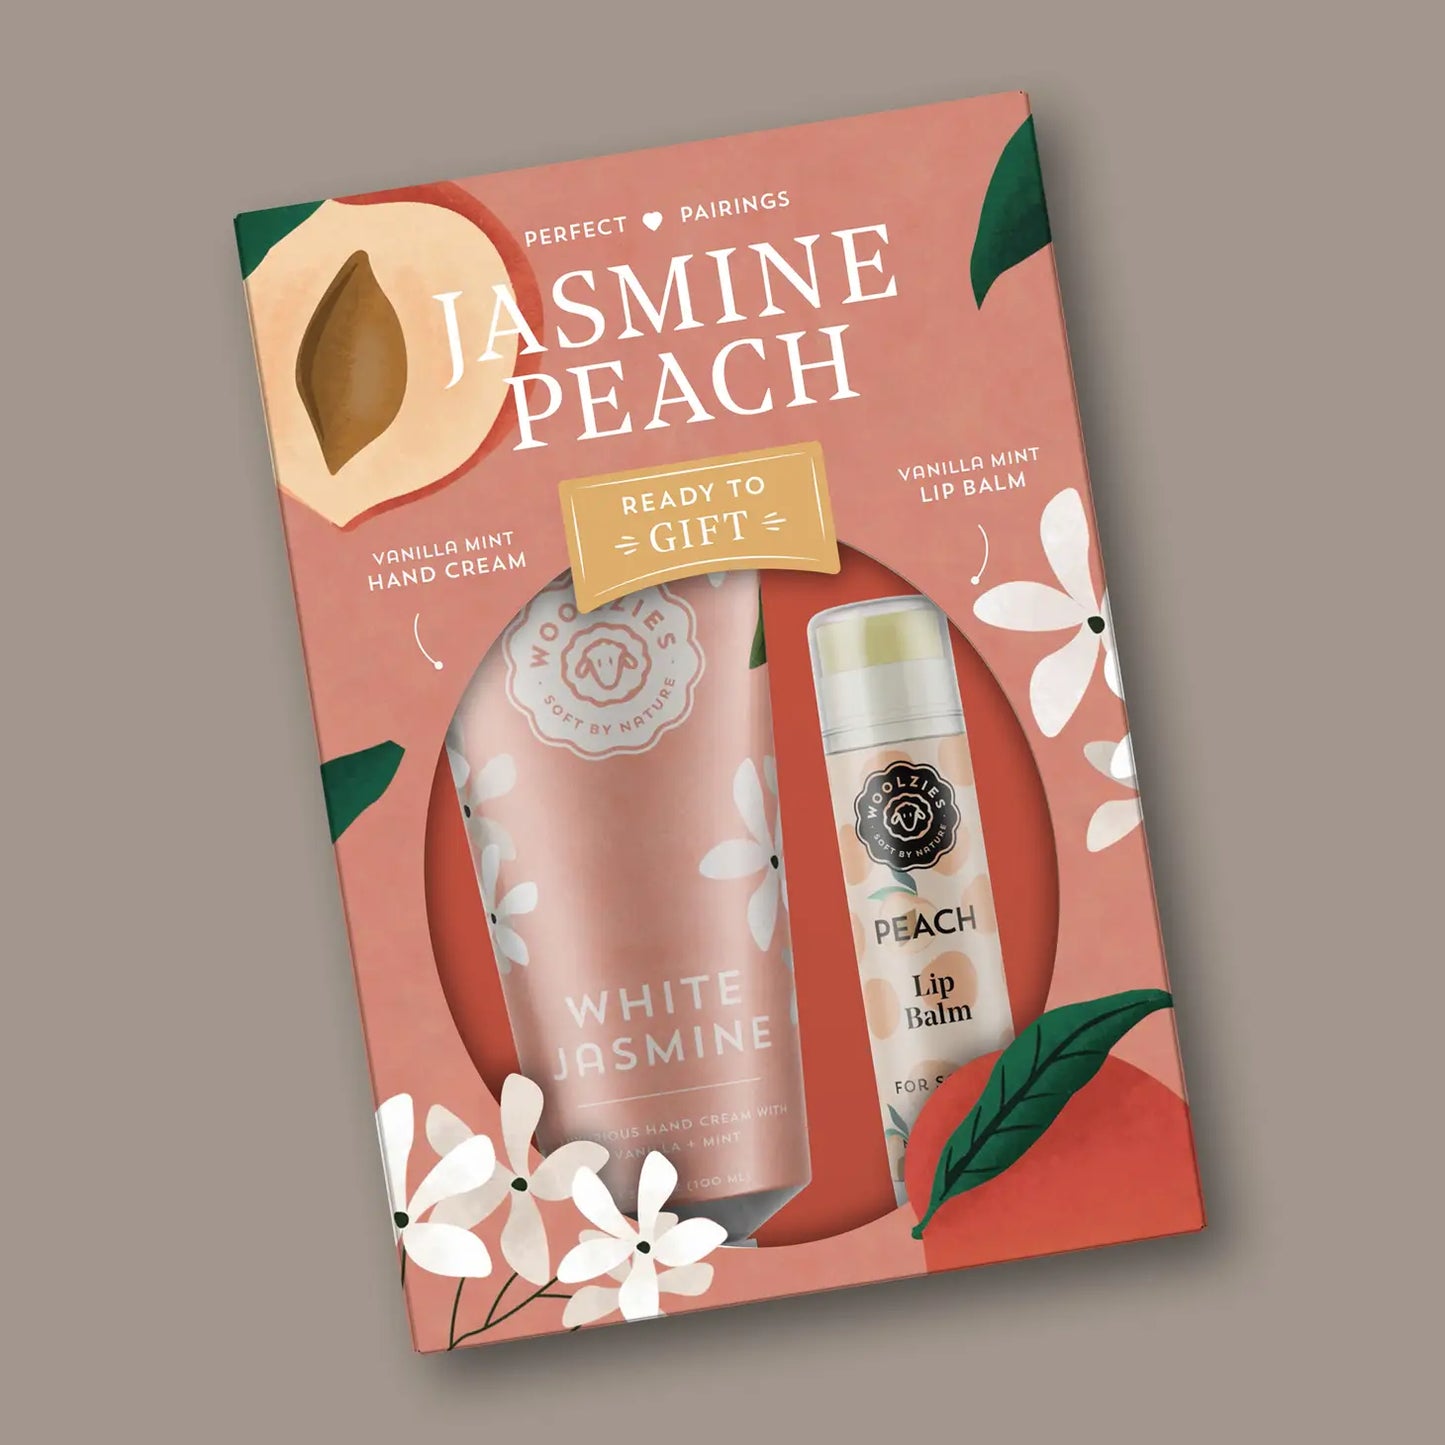 Jasmine Peach Hand Cream & Lip Balm Duo